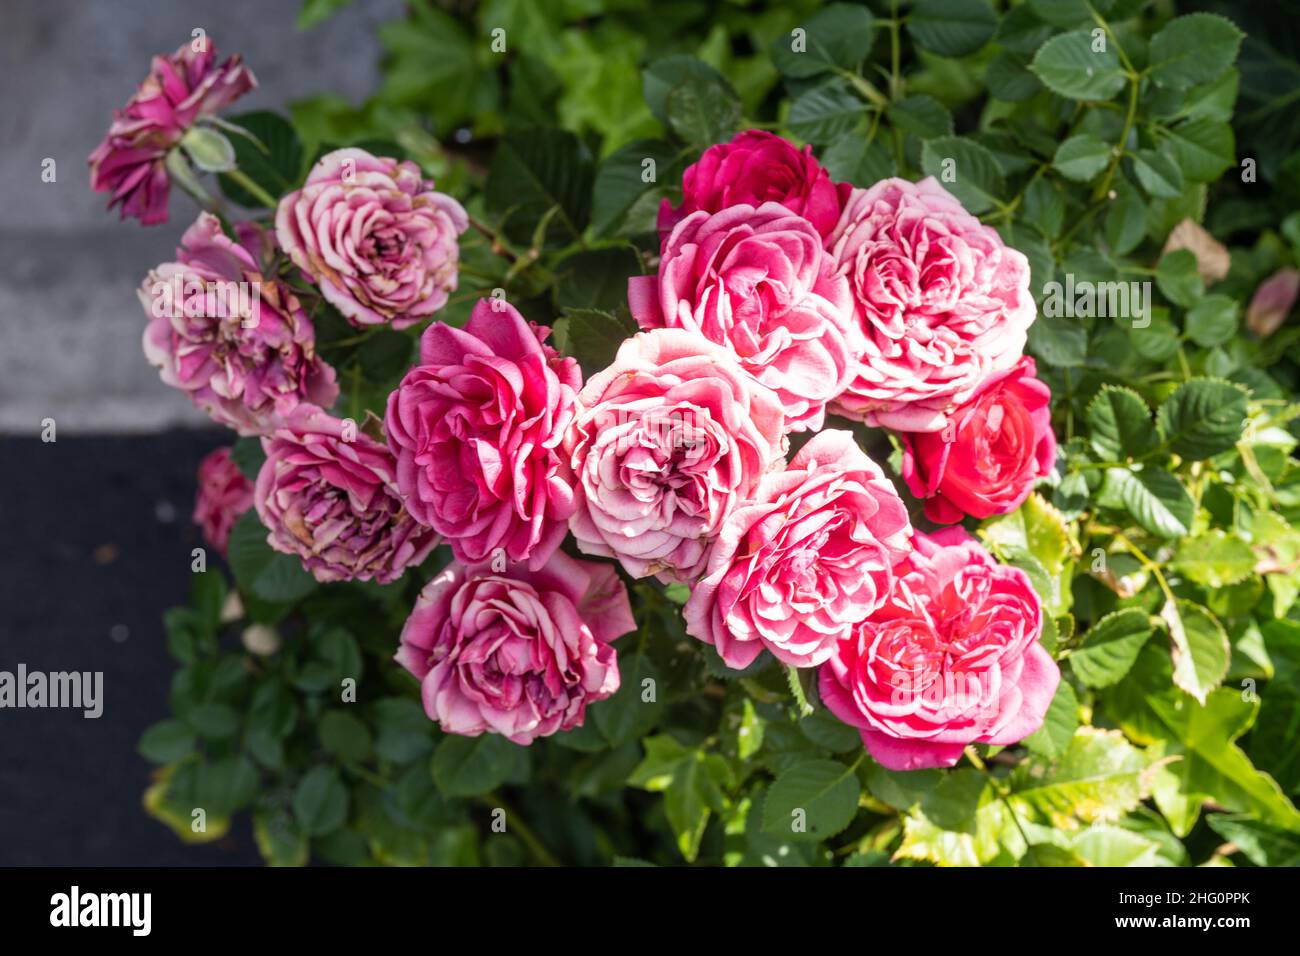 La rosa gallica (Rosa gallica) è una specie di pianta fiorente della famiglia delle rose, originaria dell'Europa centrale e meridionale, a est della Turchia e del Cauca Foto Stock